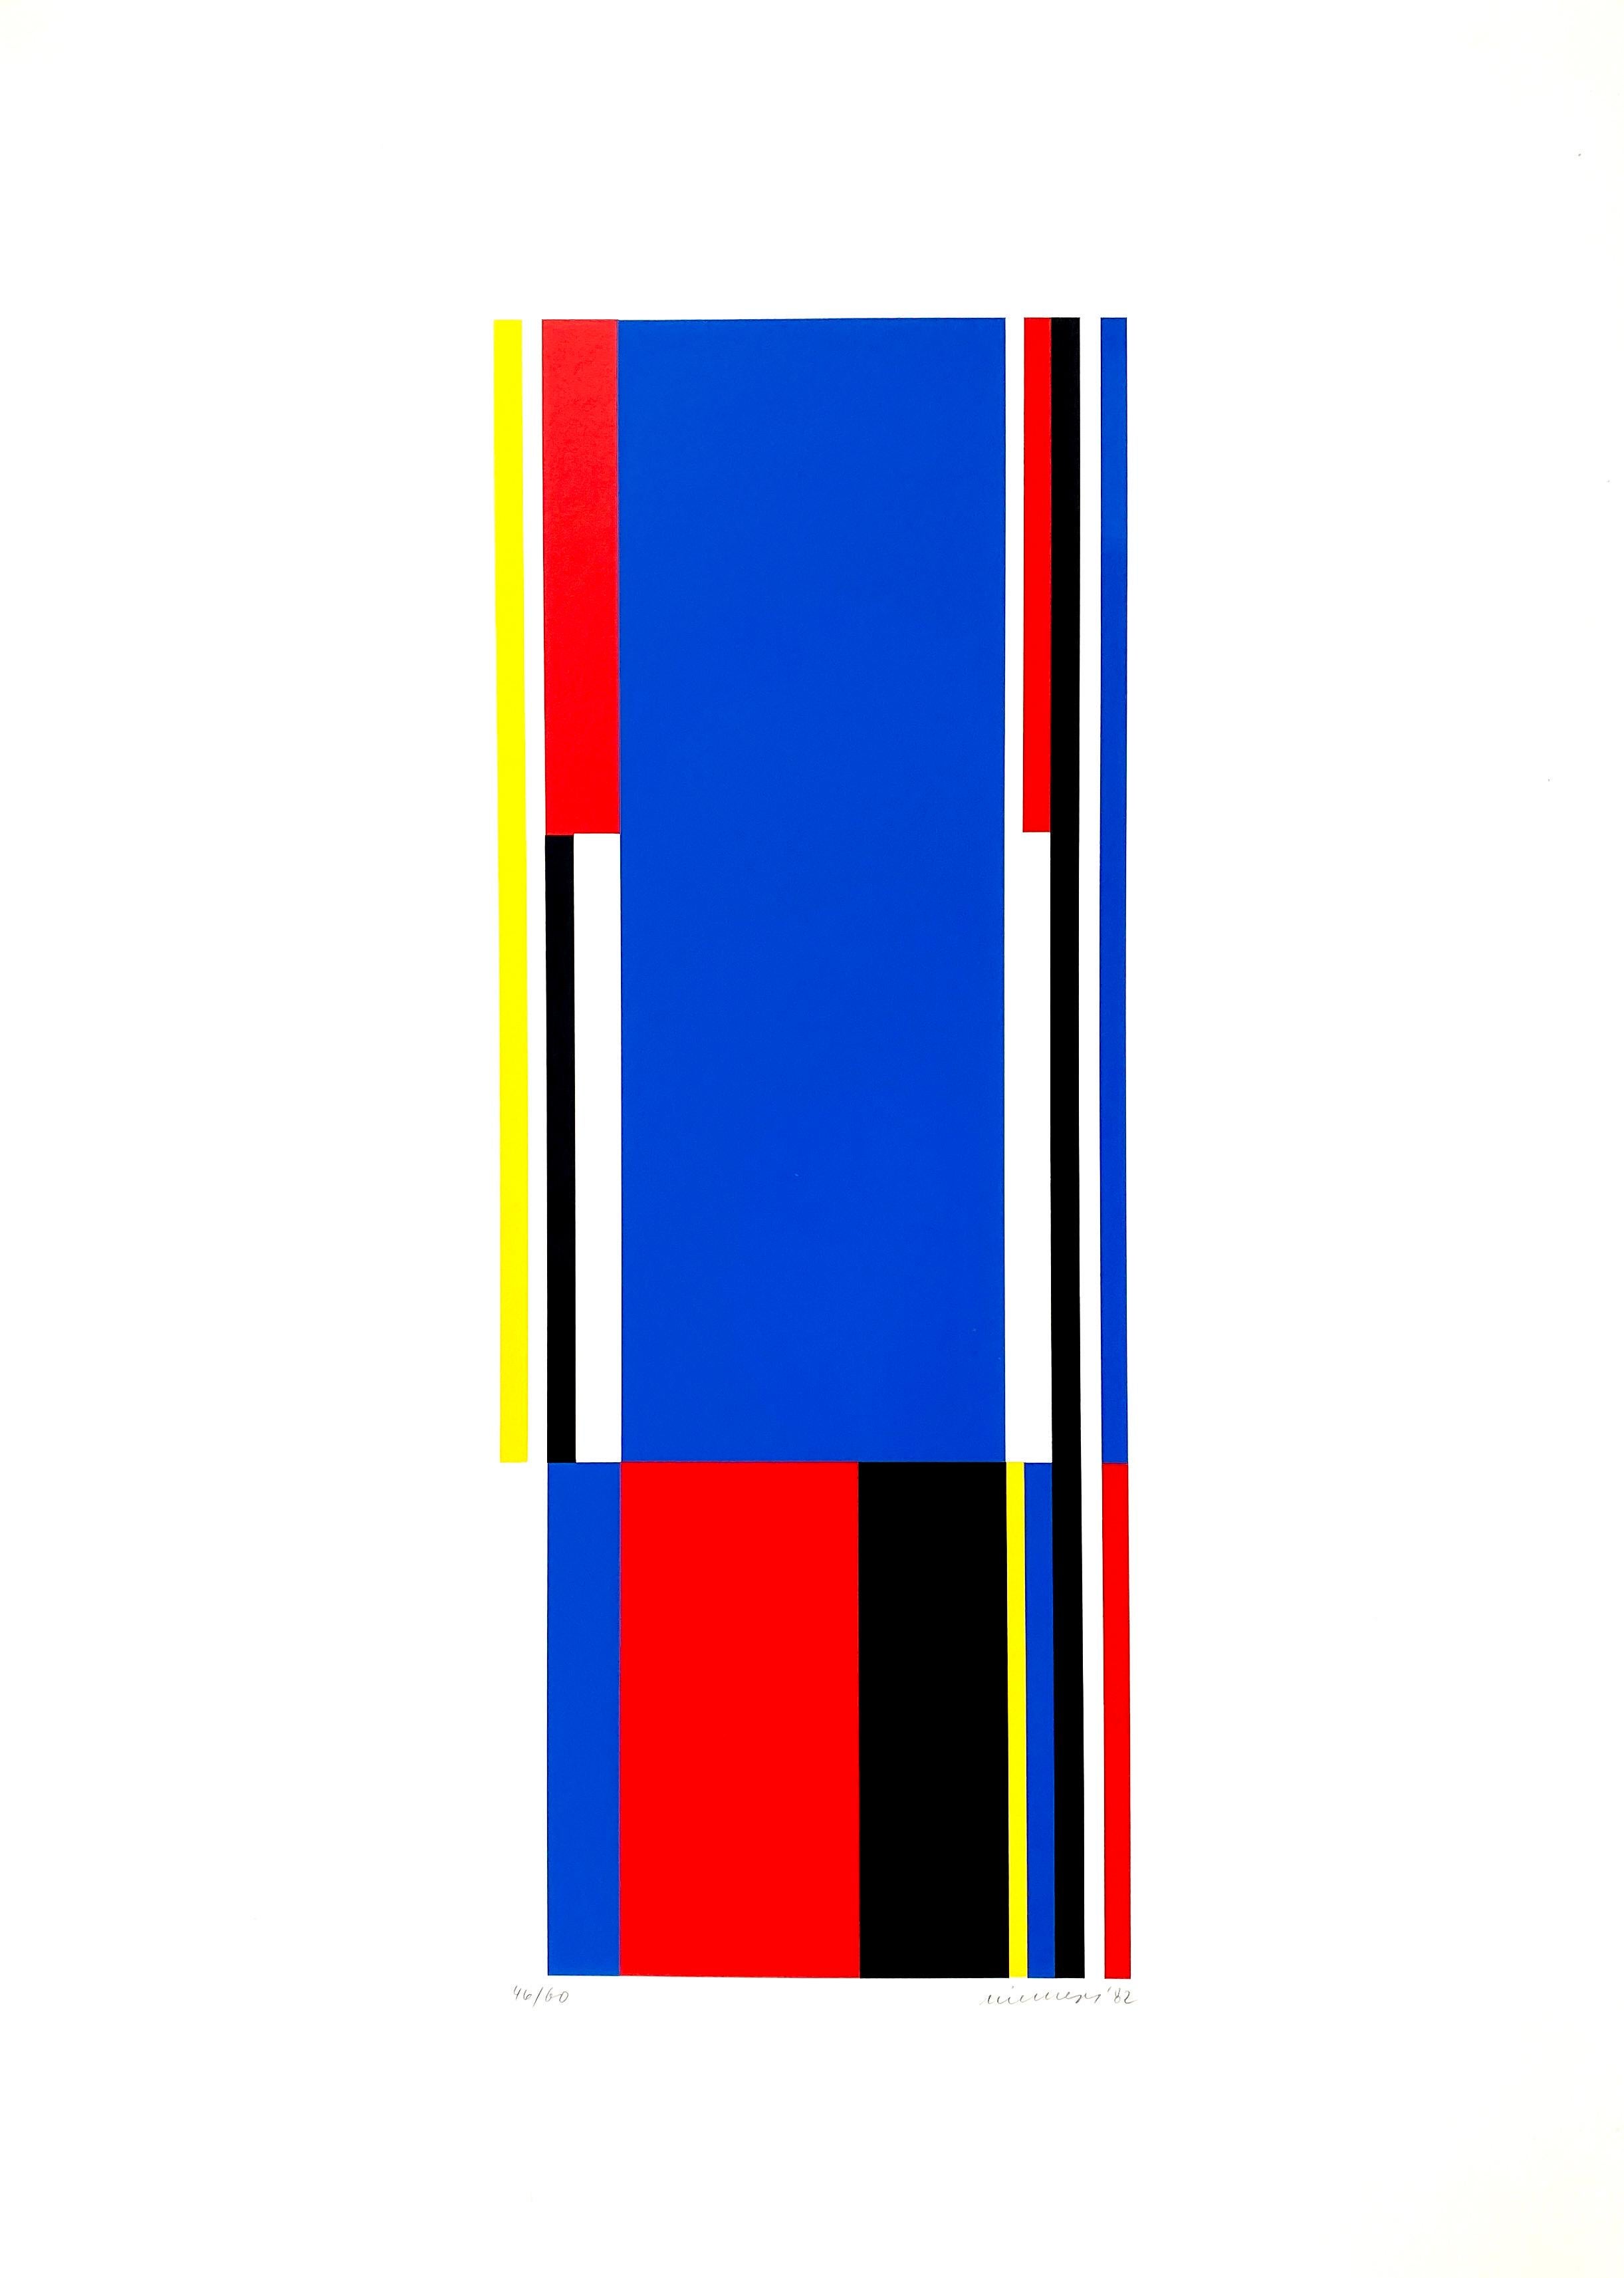 Druck, Serigrafie auf Papier mit den Maßen 70 × 50 × 0,1 cm 27,6 × 19,7 × 0,1 in
Auflage von 60 Stück, vom Künstler mit Bleistift handsigniert. Gedruckt bei Edition Partanen, Schluchsee (Deutschland) 

Jo Niemeyer ist ein Künstler und Designer